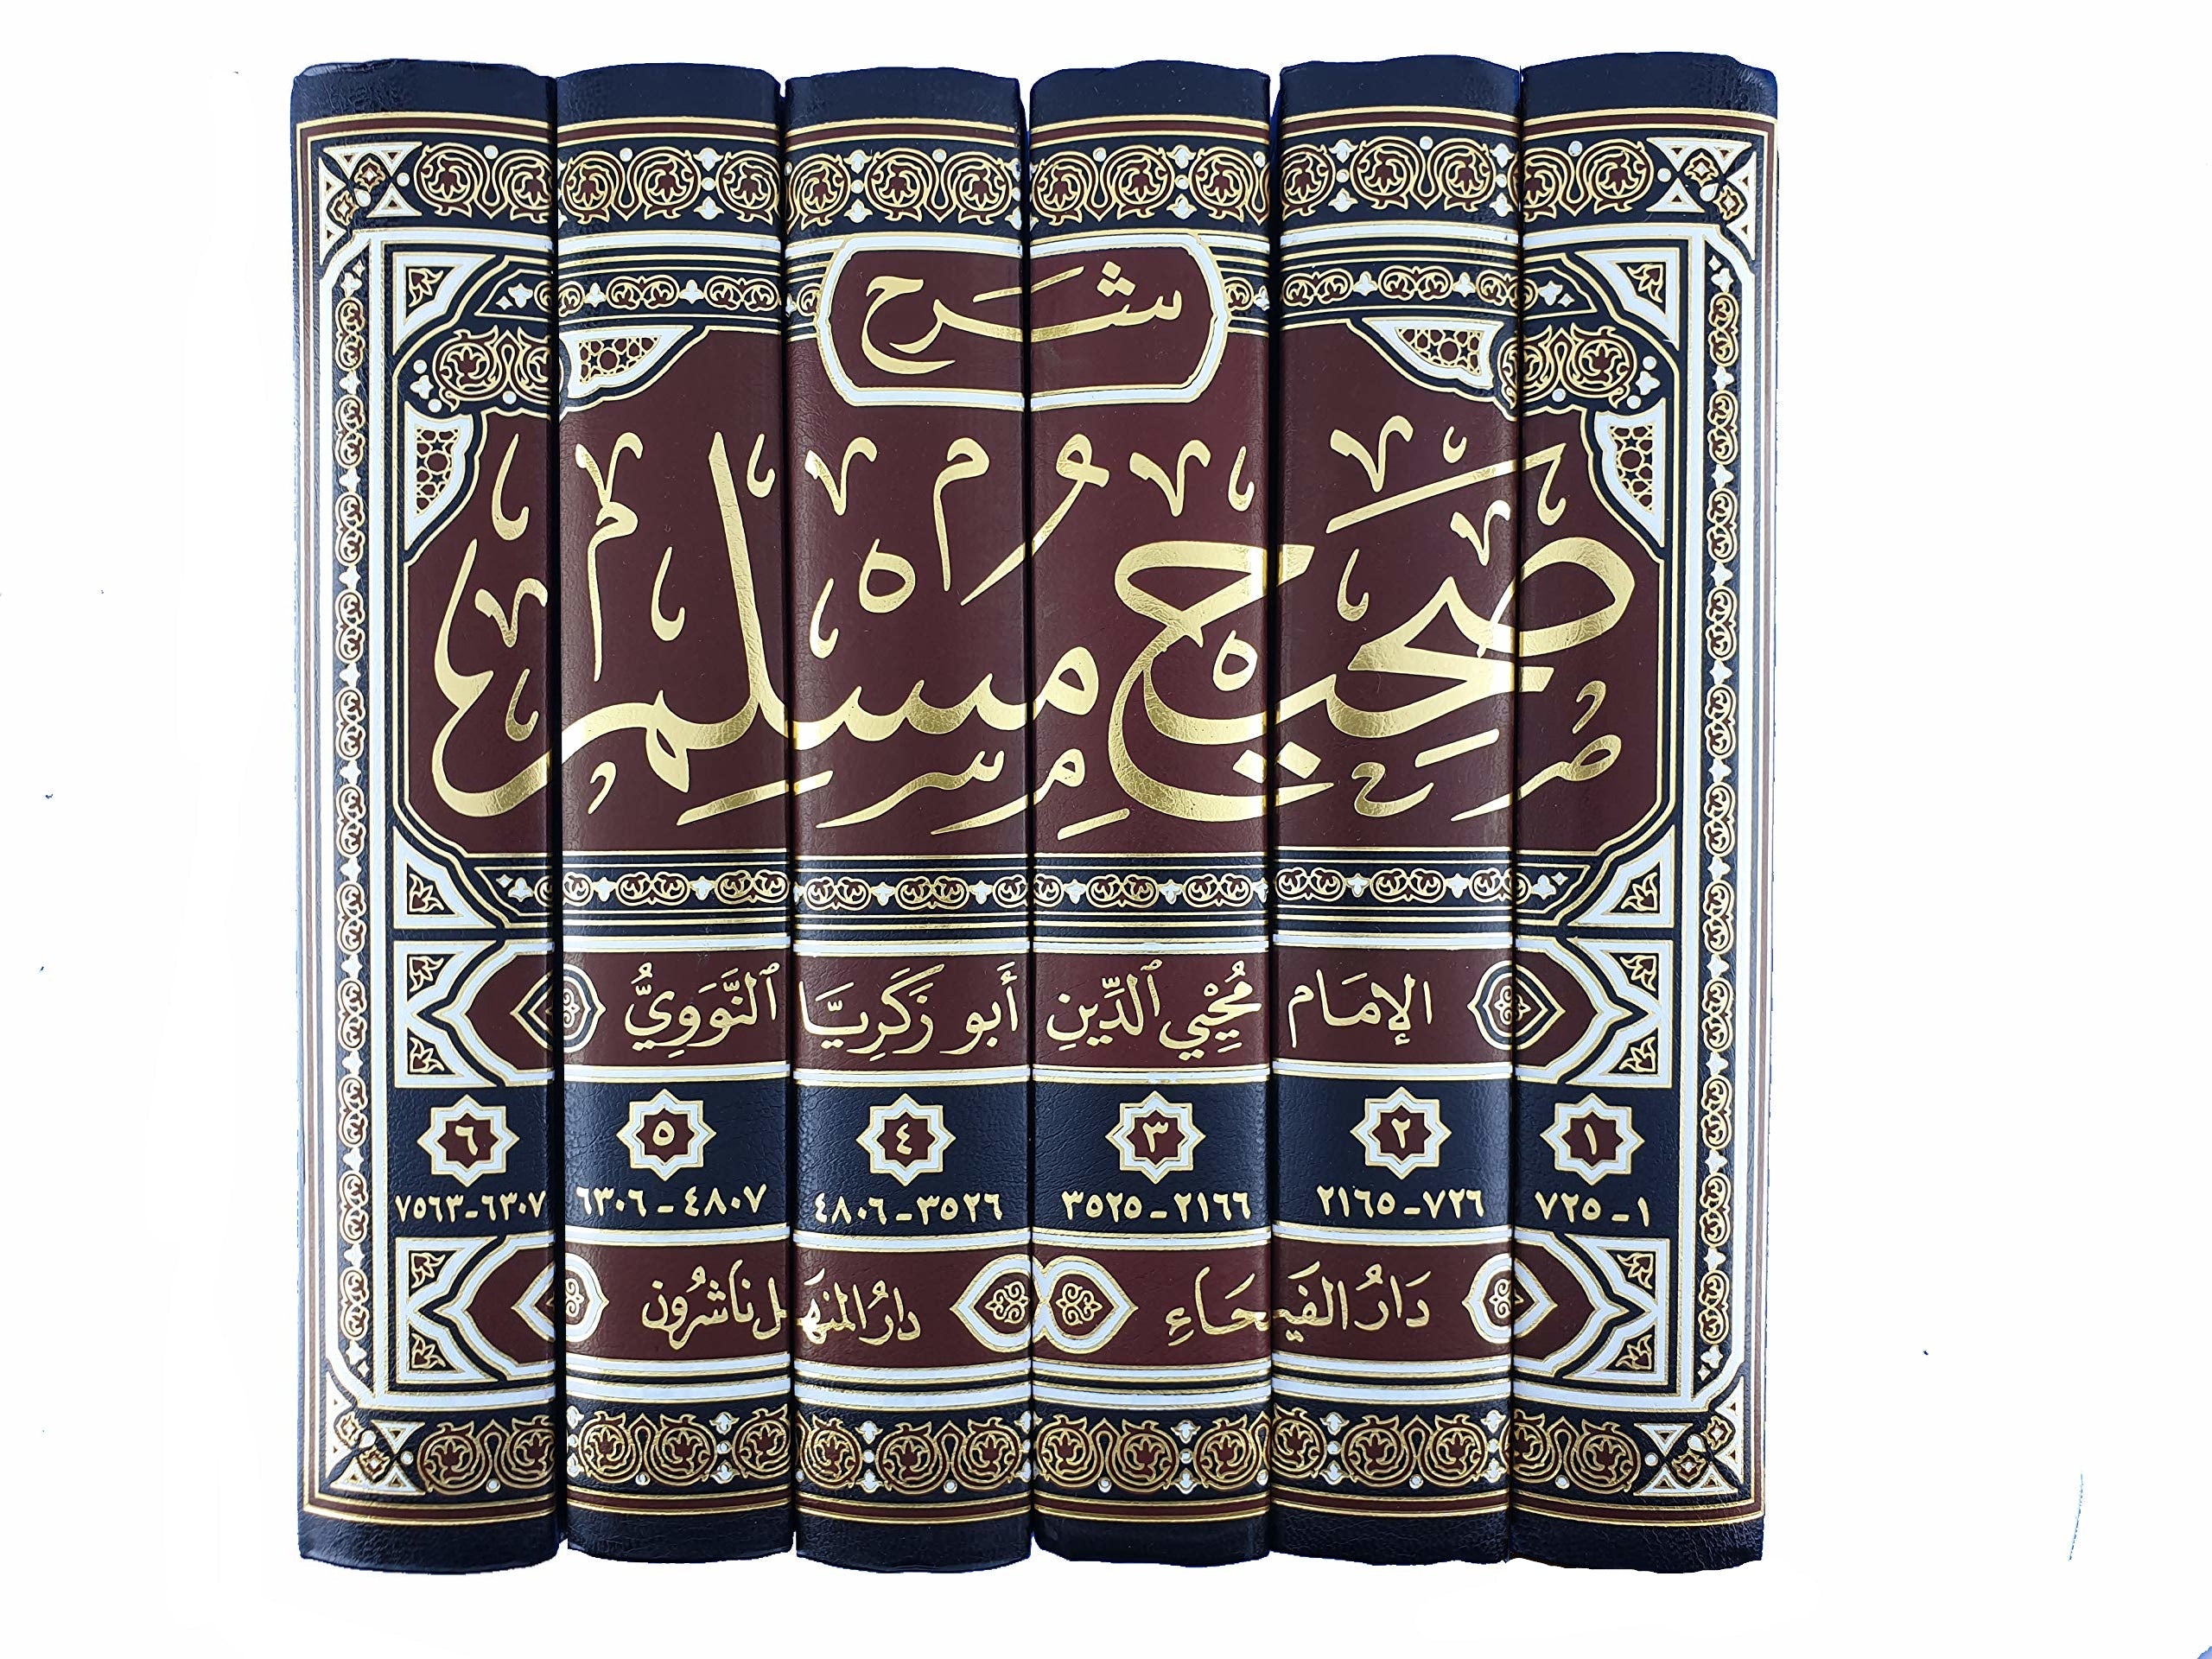 ‎صحيح مسلم بشرح النووي 6 مجلدات‎ كتب إسلامية الإمام النووي